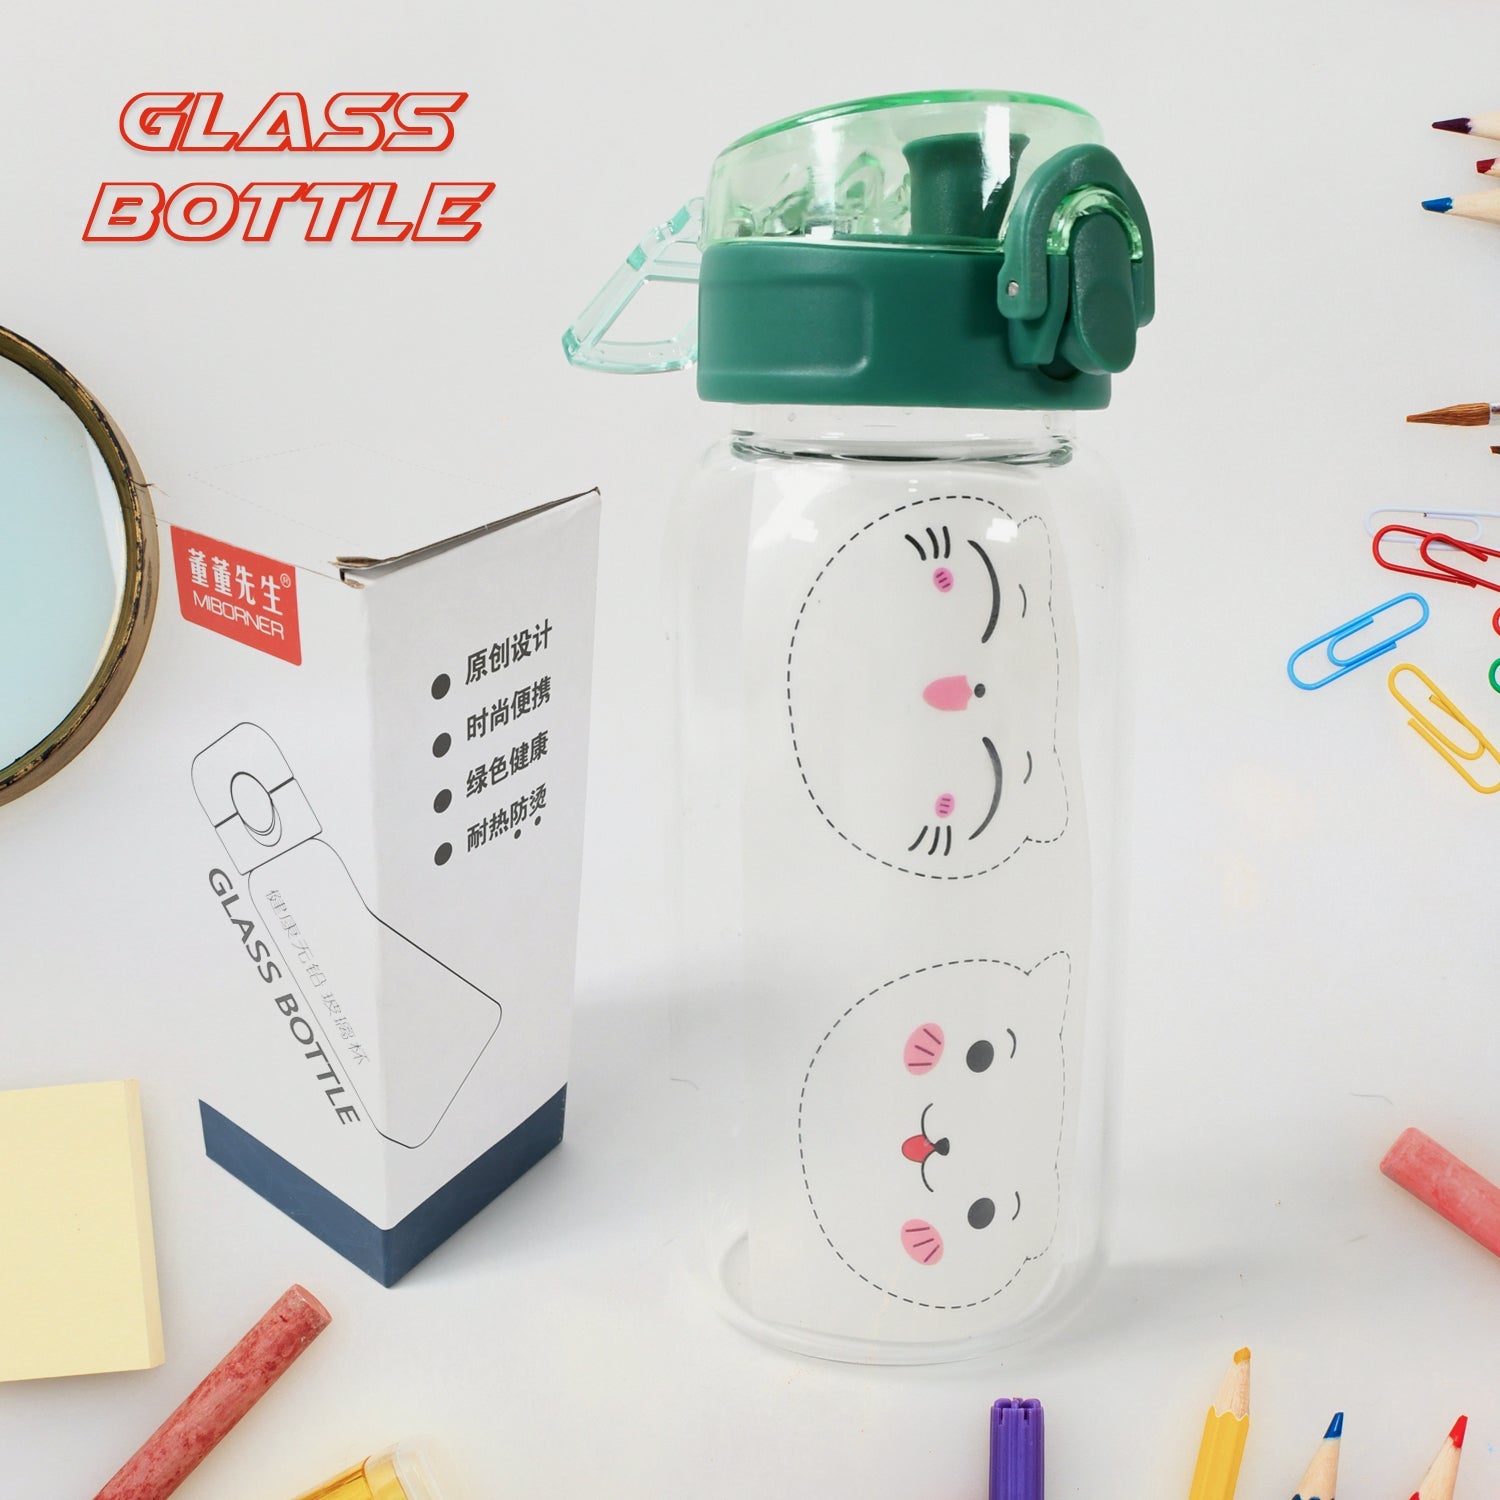 12713 Anti-Leak Glass Water Bottle, Crystal Glass Water Bottle For Kids, Stylish Water Bottle with Sipper